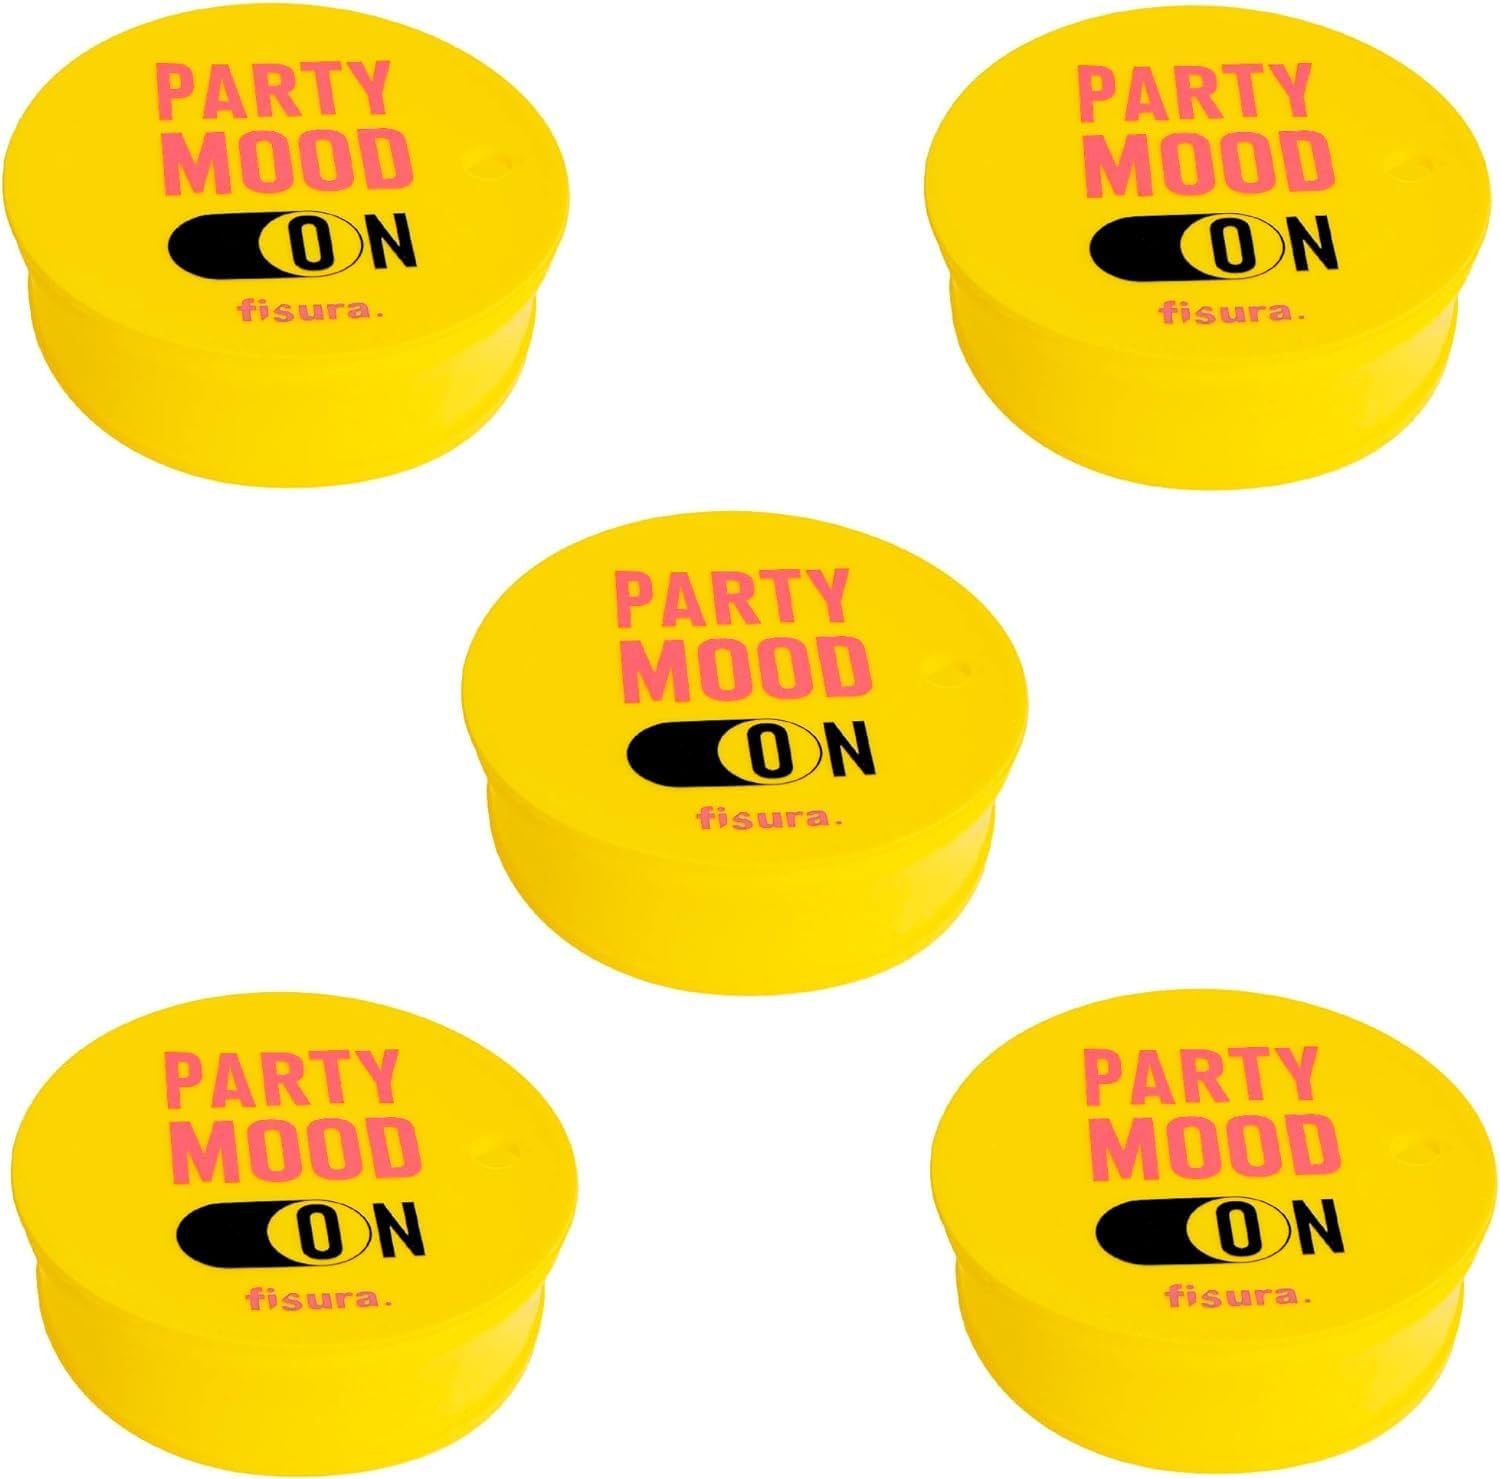 Tapa vasos antidroga “Party mood ON” 5 unidades